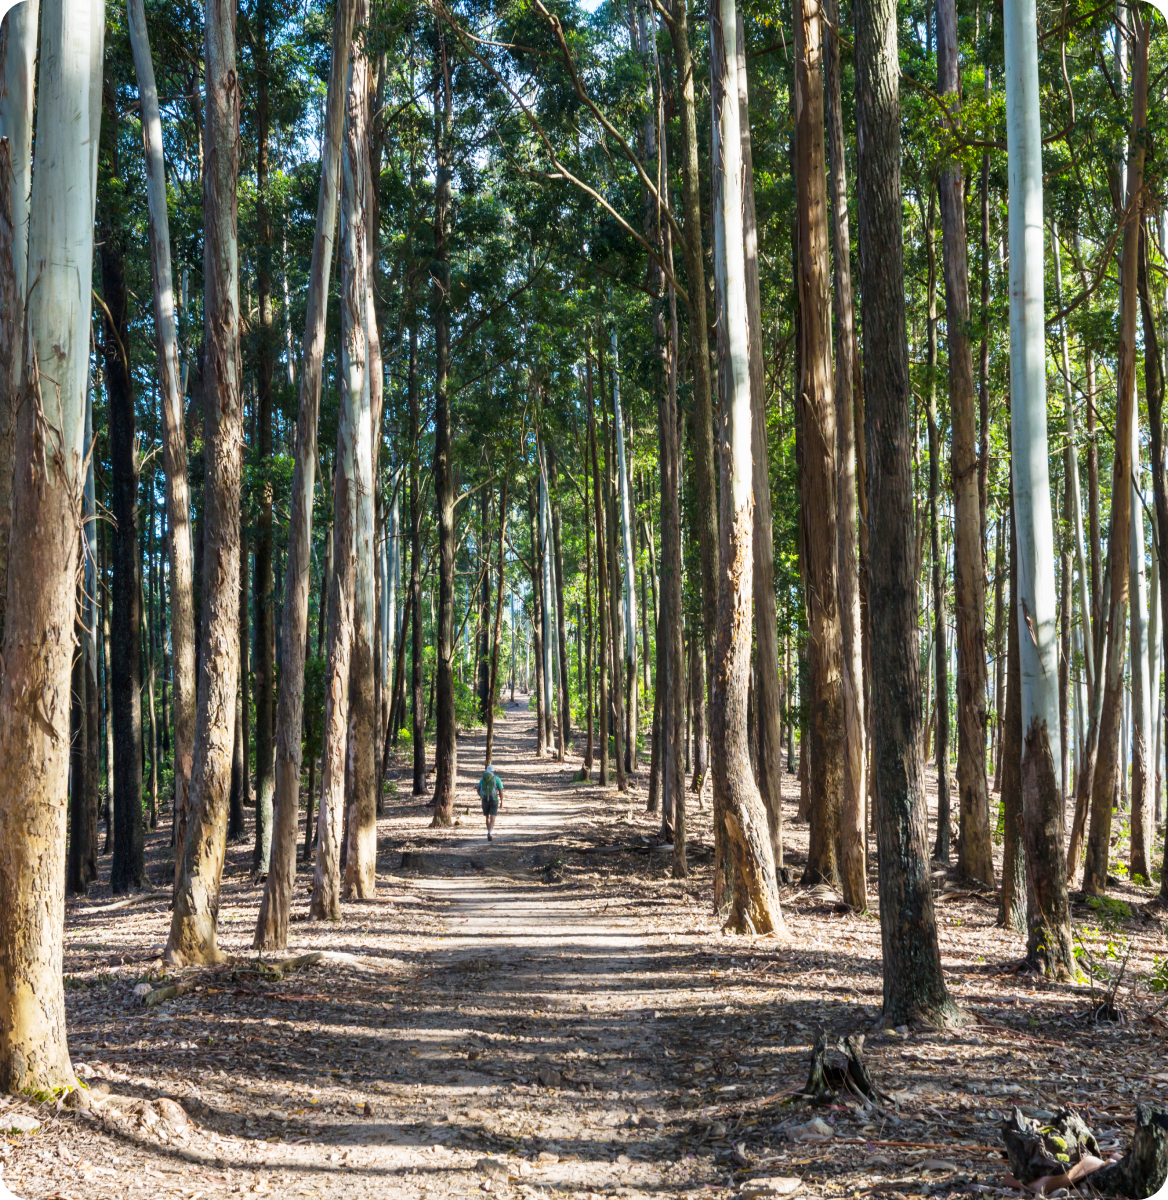 En la imagen se muestra un camino con arboles verdes y grandes en un bosque.